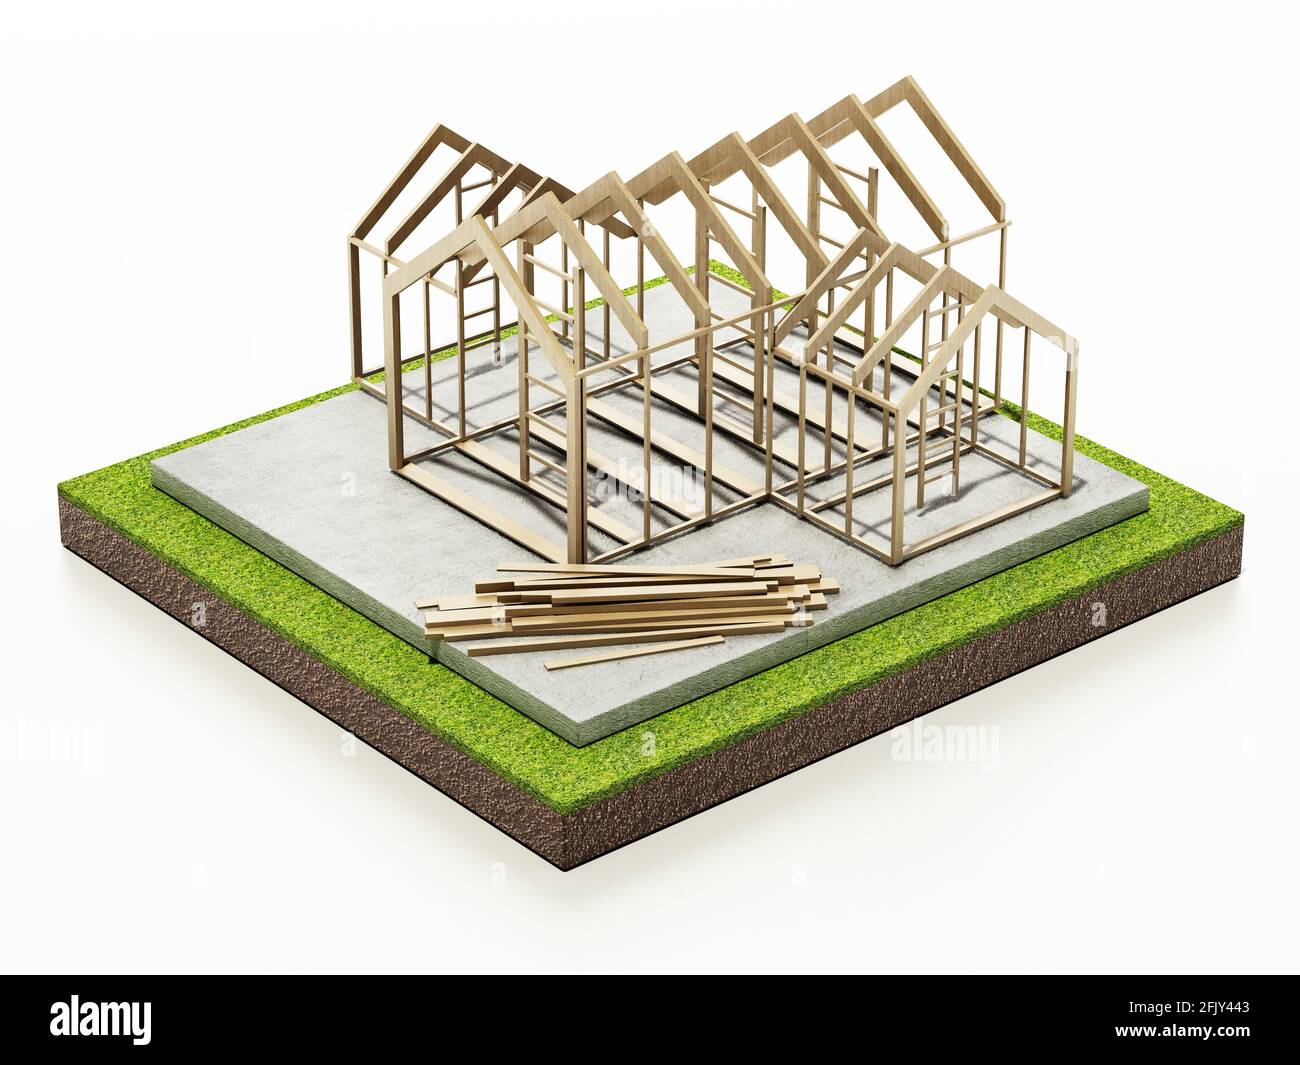 Structure de maison en bois sur base en béton. Illustration 3D. Banque D'Images